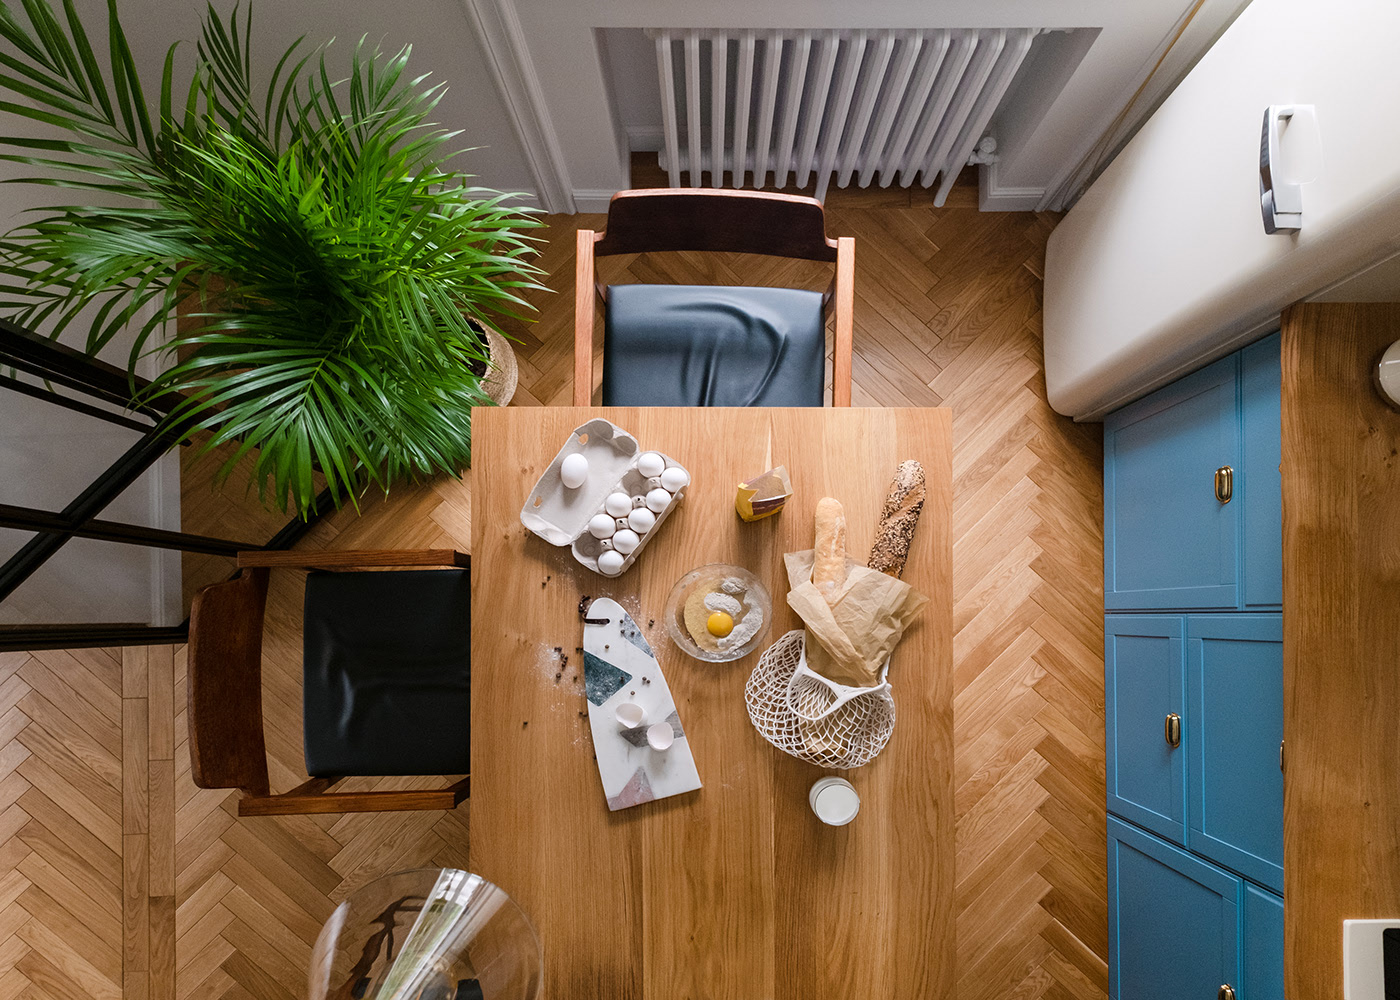 Phòng bếp chụp từ trên cao cho thấy sự hòa quyện giữa sàn gỗ họa tiết xương cá hiện đại với mặt bàn bằng gỗ, chậu cây cảnh tô điểm cho không gian thêm tươi mát.